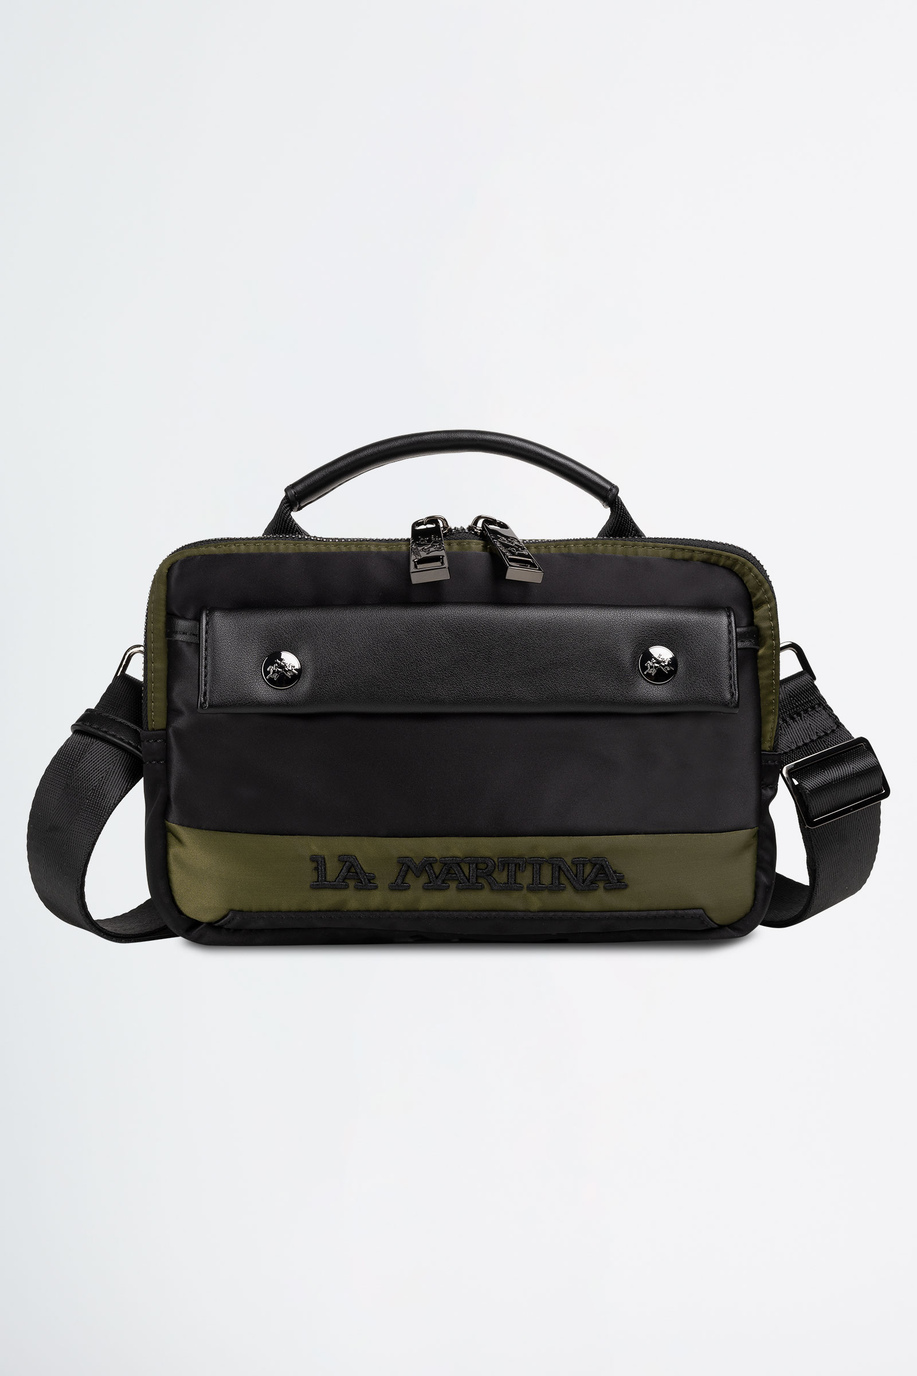 Shoulder bag in fabric - New Arrivals Men | La Martina - Official Online Shop